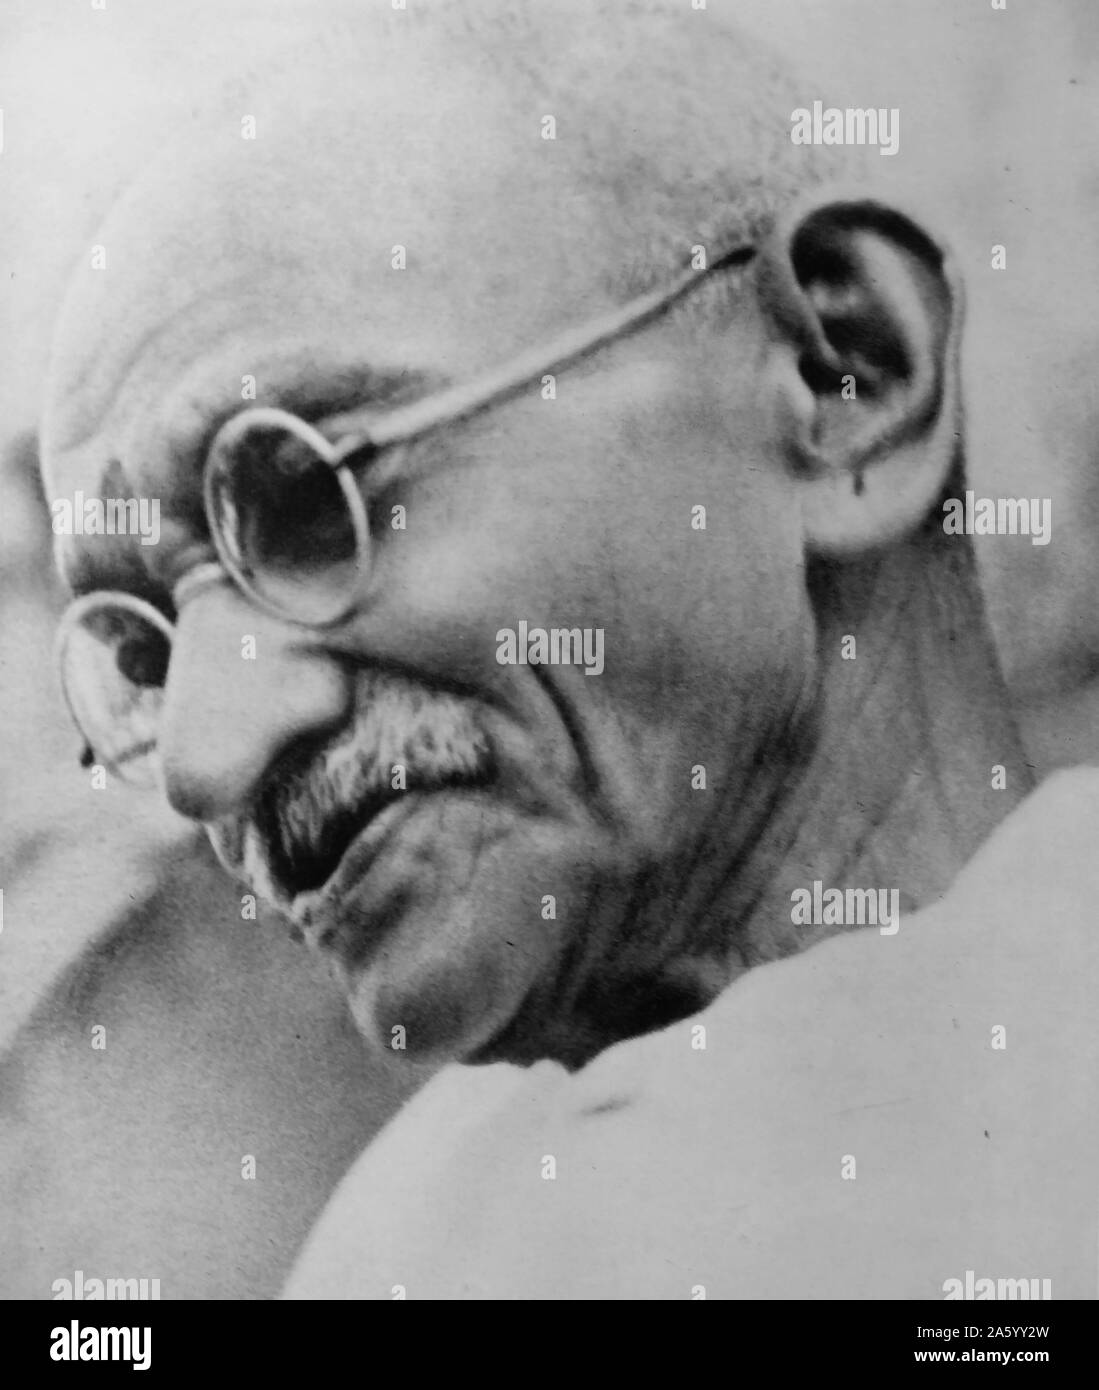 Mohandas Karamchand Gandhi (1869 - 1948), le principal leader de l'indépendance de l'Inde en mouvement a décidé de l'Inde. Emploi de désobéissance civile non-violente, Gandhi a mené l'Inde à l'indépendance et a inspiré des mouvements pour les droits civils et la liberté à travers le monde. Banque D'Images